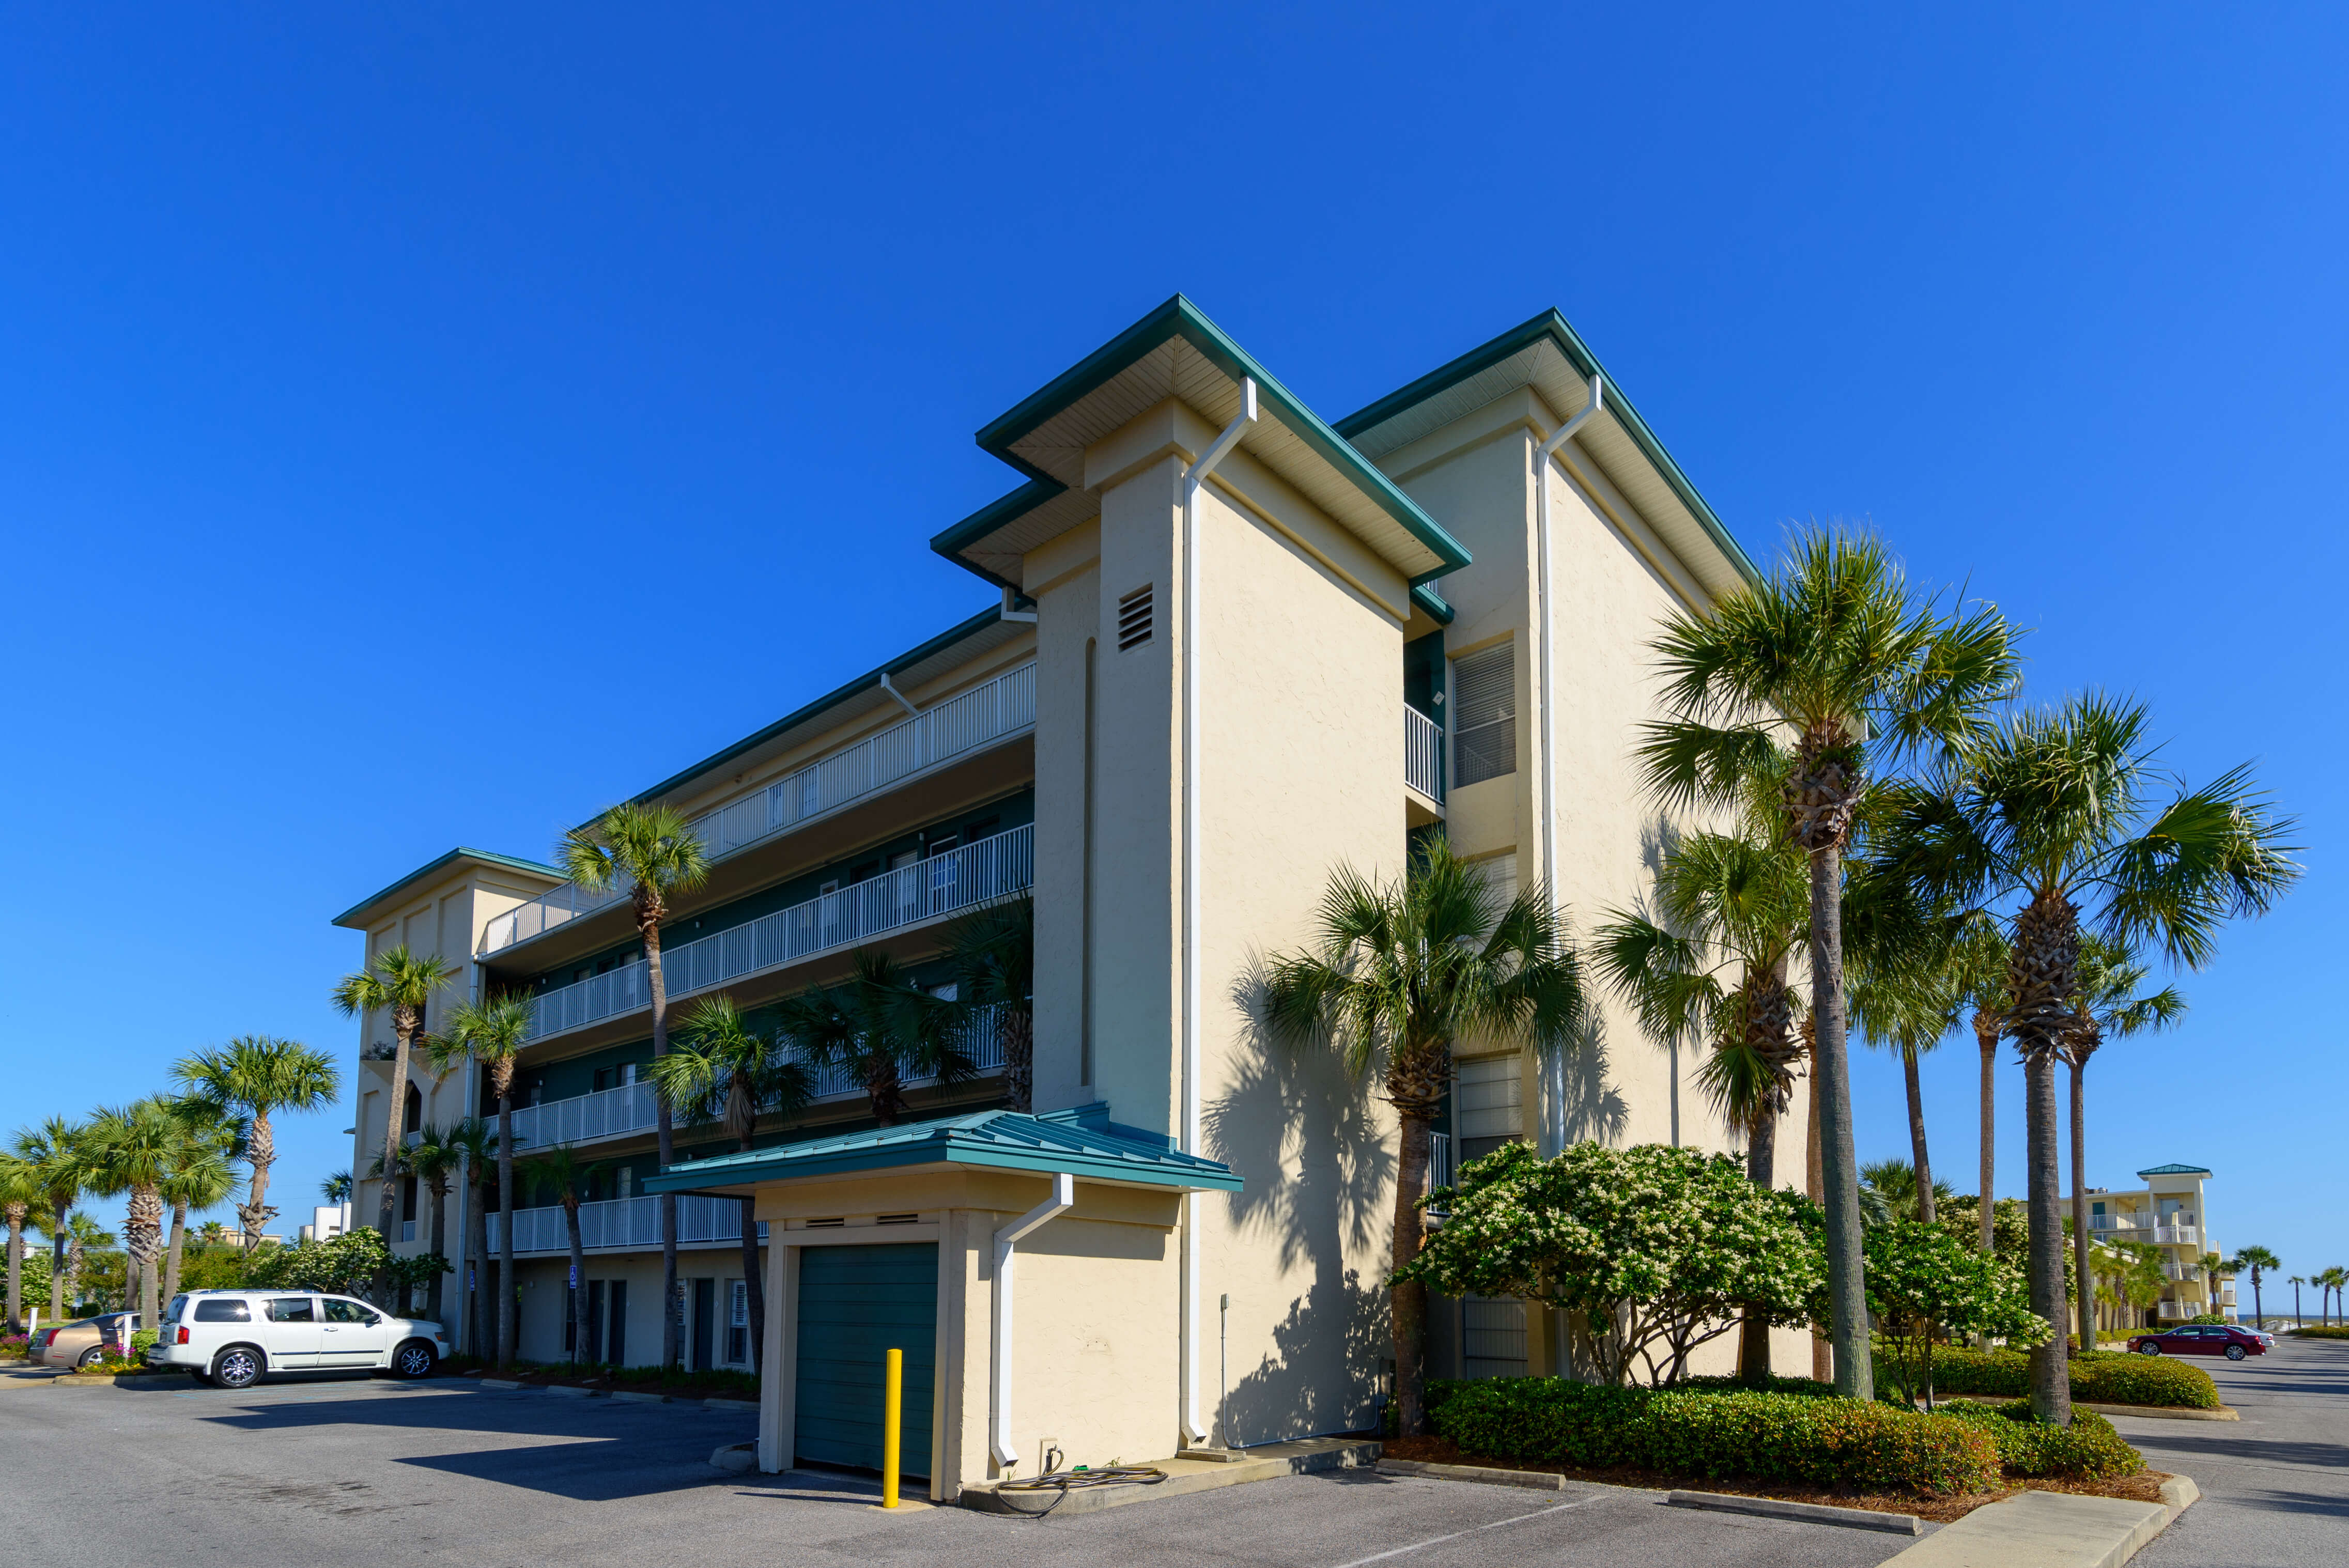 Condo building at Silver Dunes in Destin, Florida